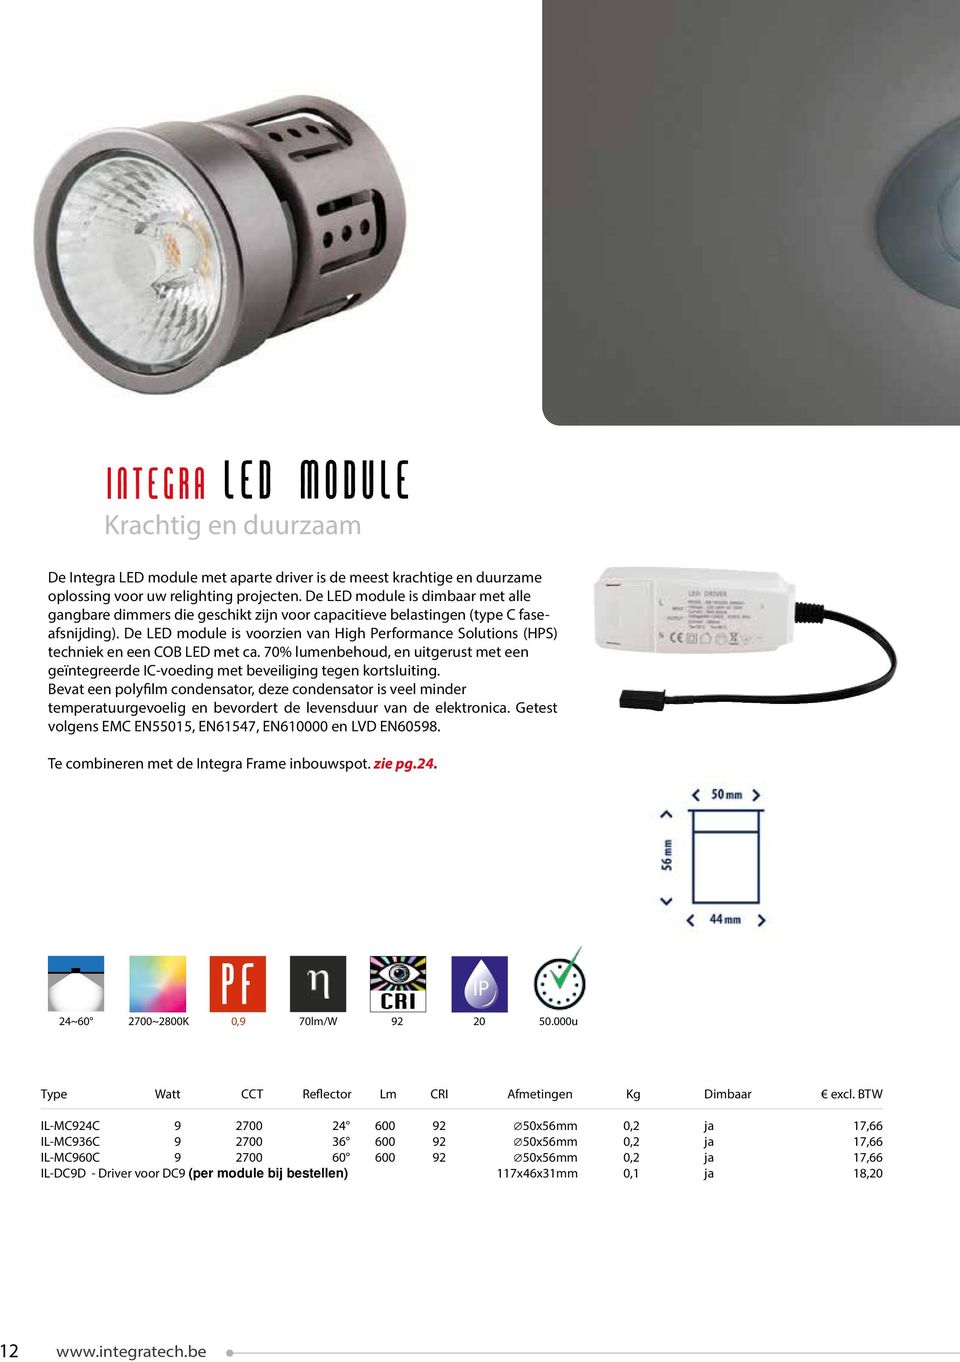 De LED module is voorzien van High Performance Solutions (HPS) techniek en een COB LED met ca. 70% lumenbehoud, en uitgerust met een geïntegreerde IC-voeding met beveiliging tegen kortsluiting.